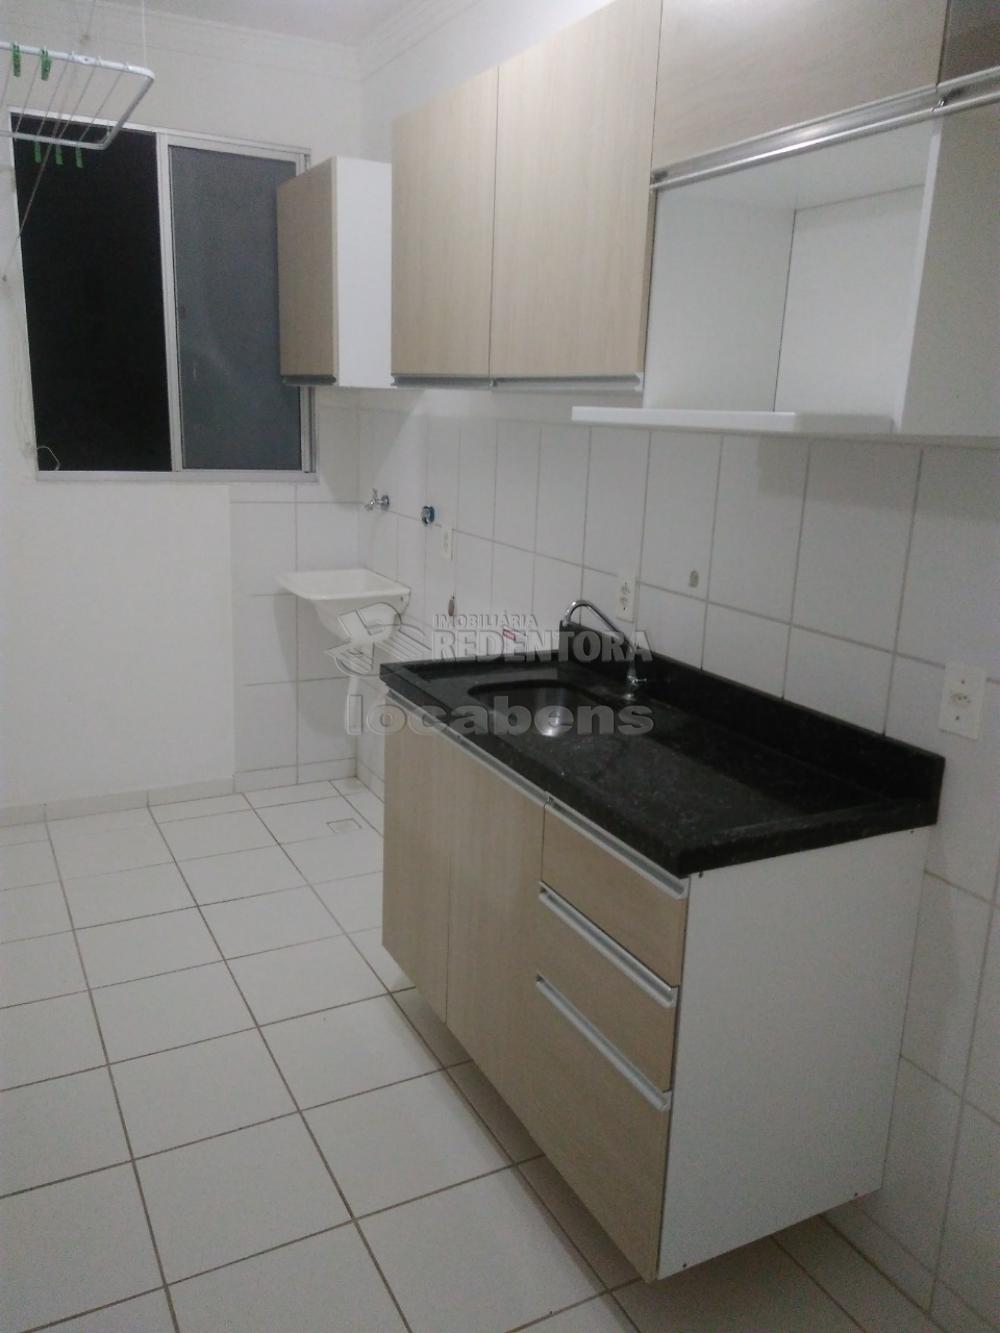 Comprar Apartamento / Padrão em São José do Rio Preto apenas R$ 180.000,00 - Foto 11